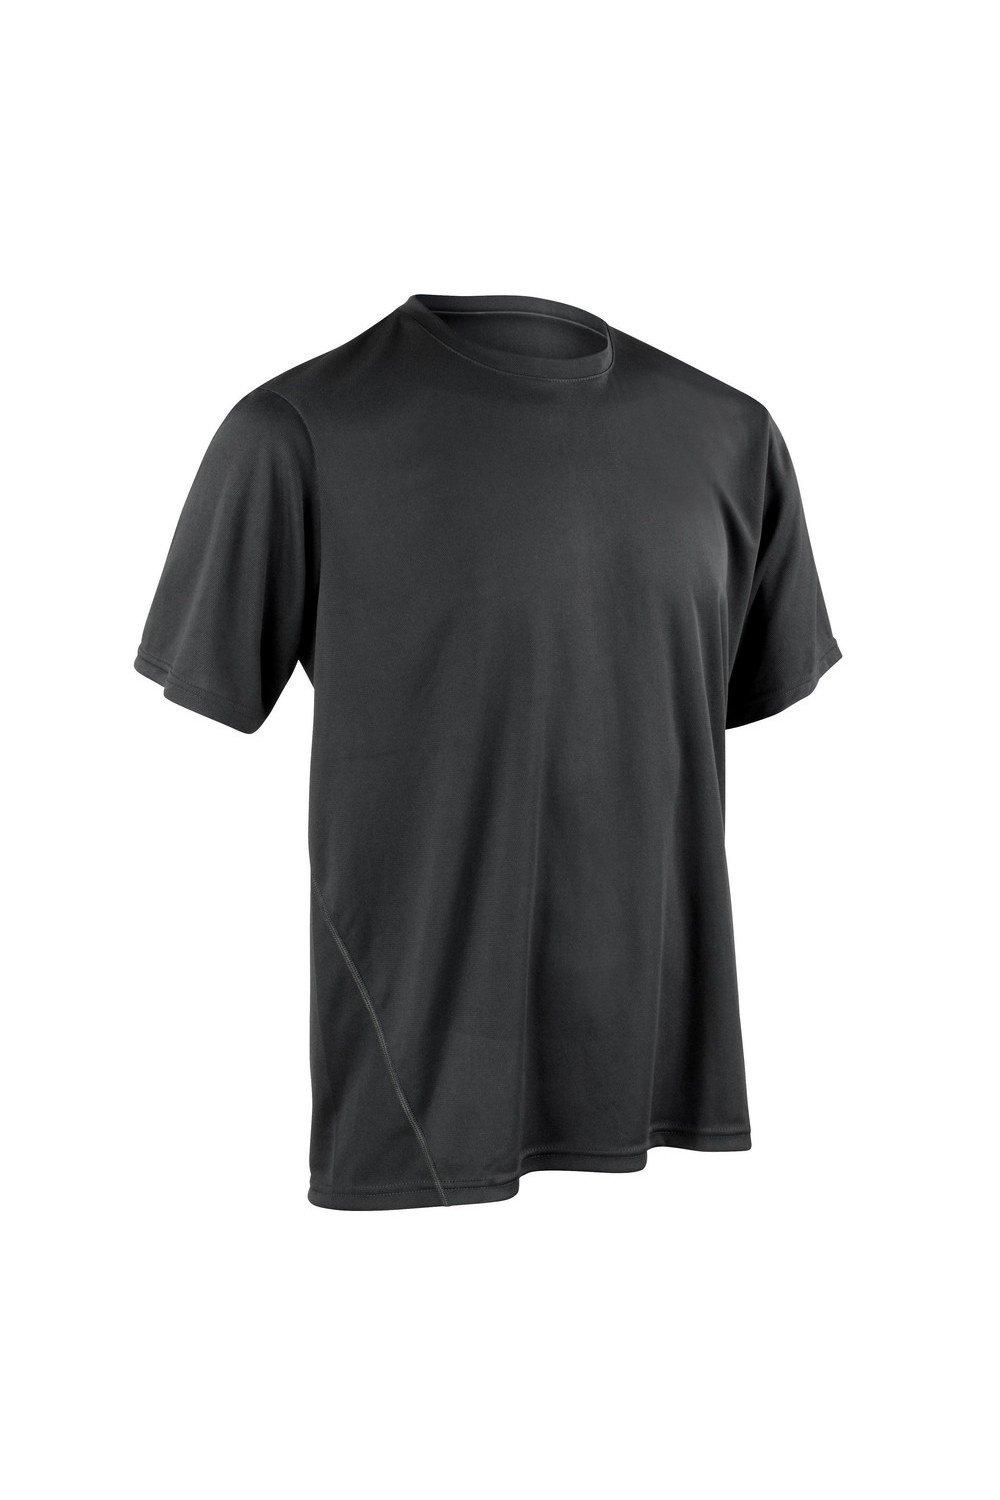 Быстросохнущая спортивная футболка с короткими рукавами Spiro, черный